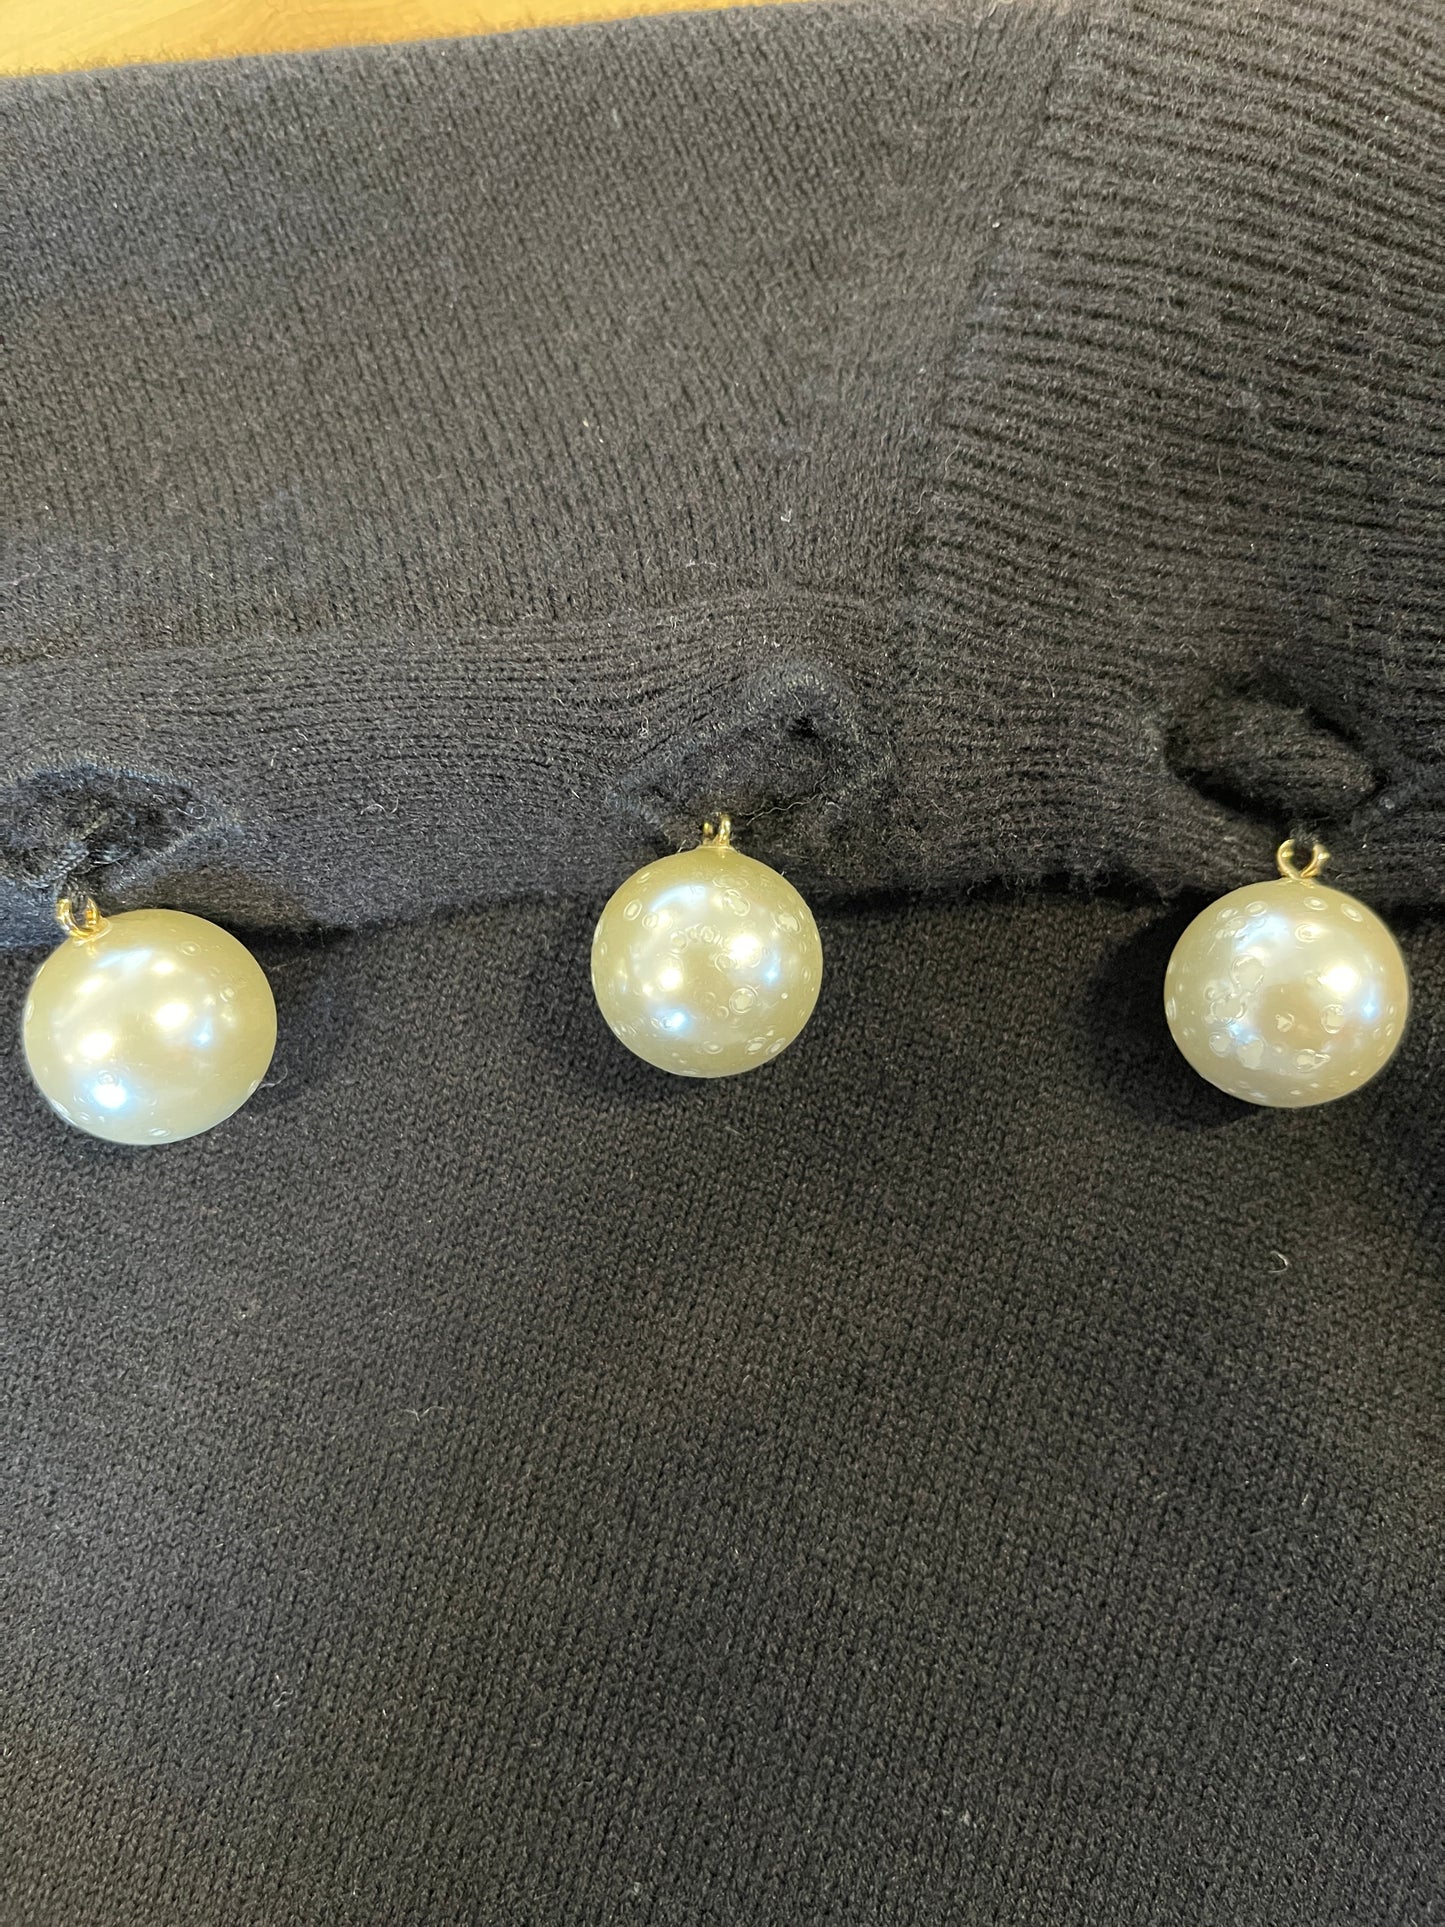 Chandail noir à dentelle et perles surdimensionnées (M)